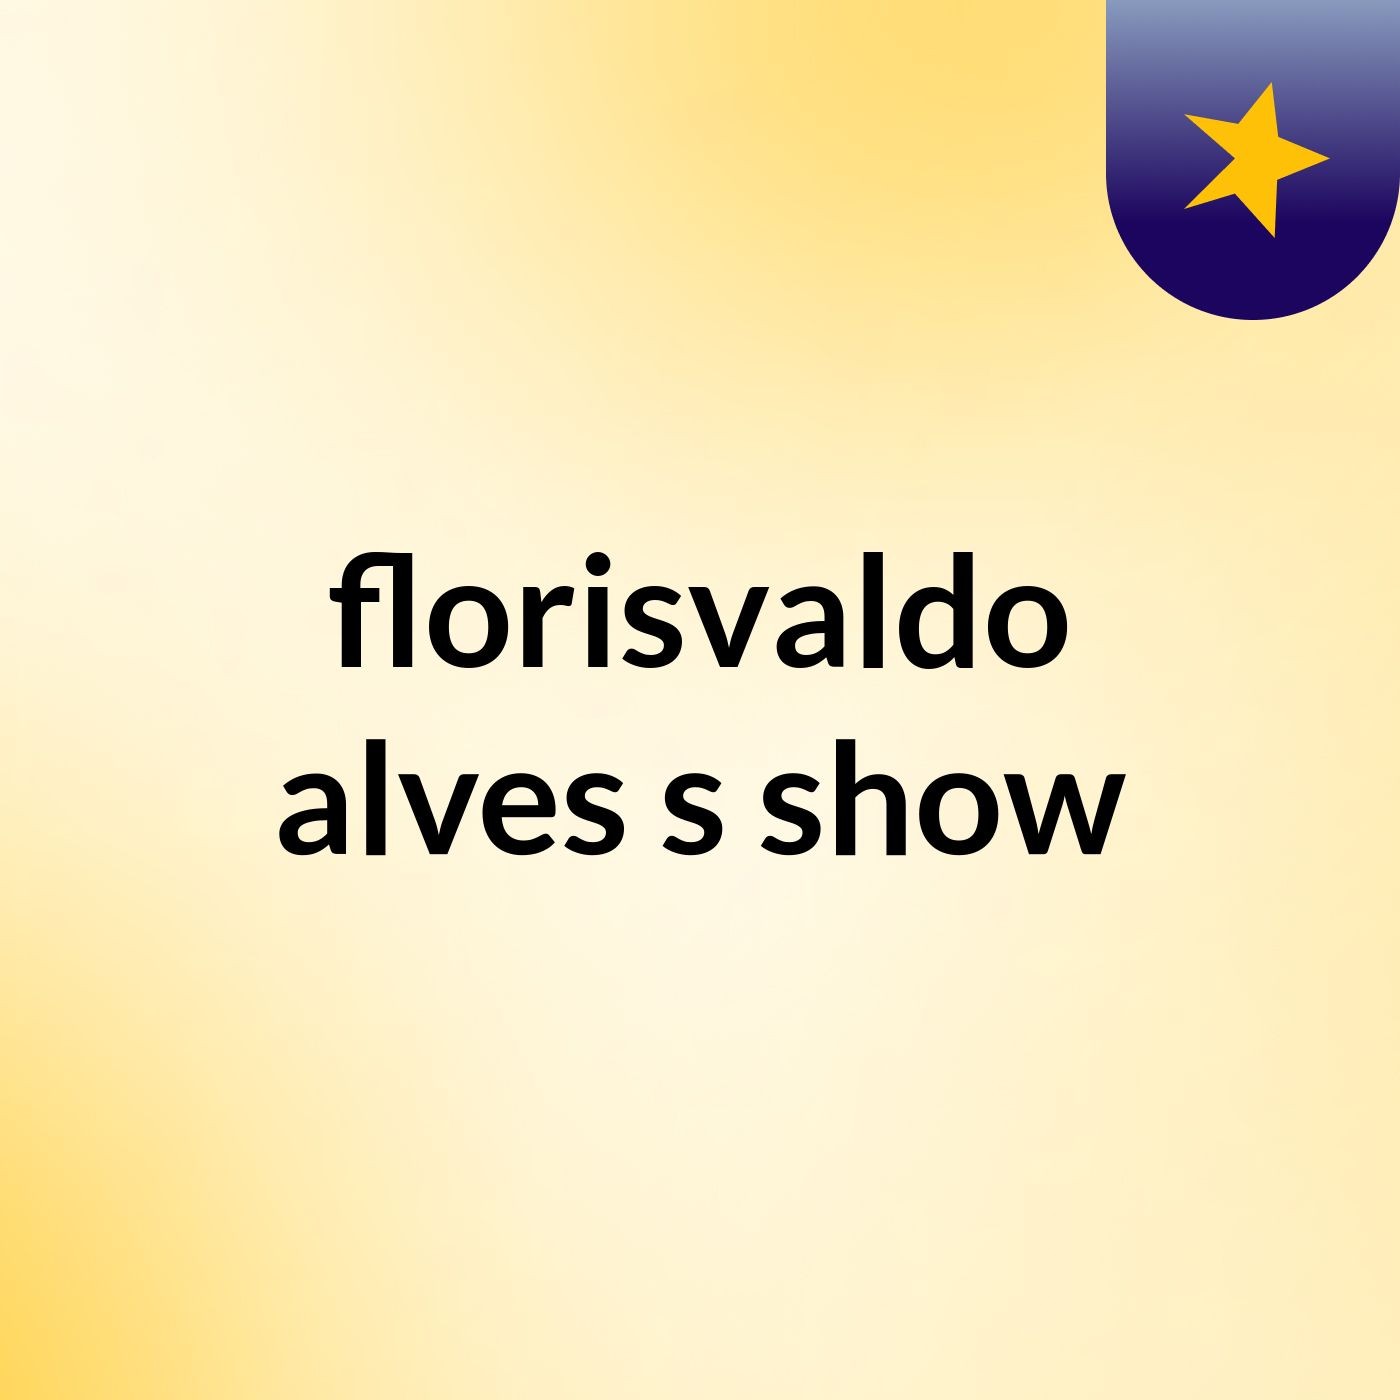 florisvaldo alves's show